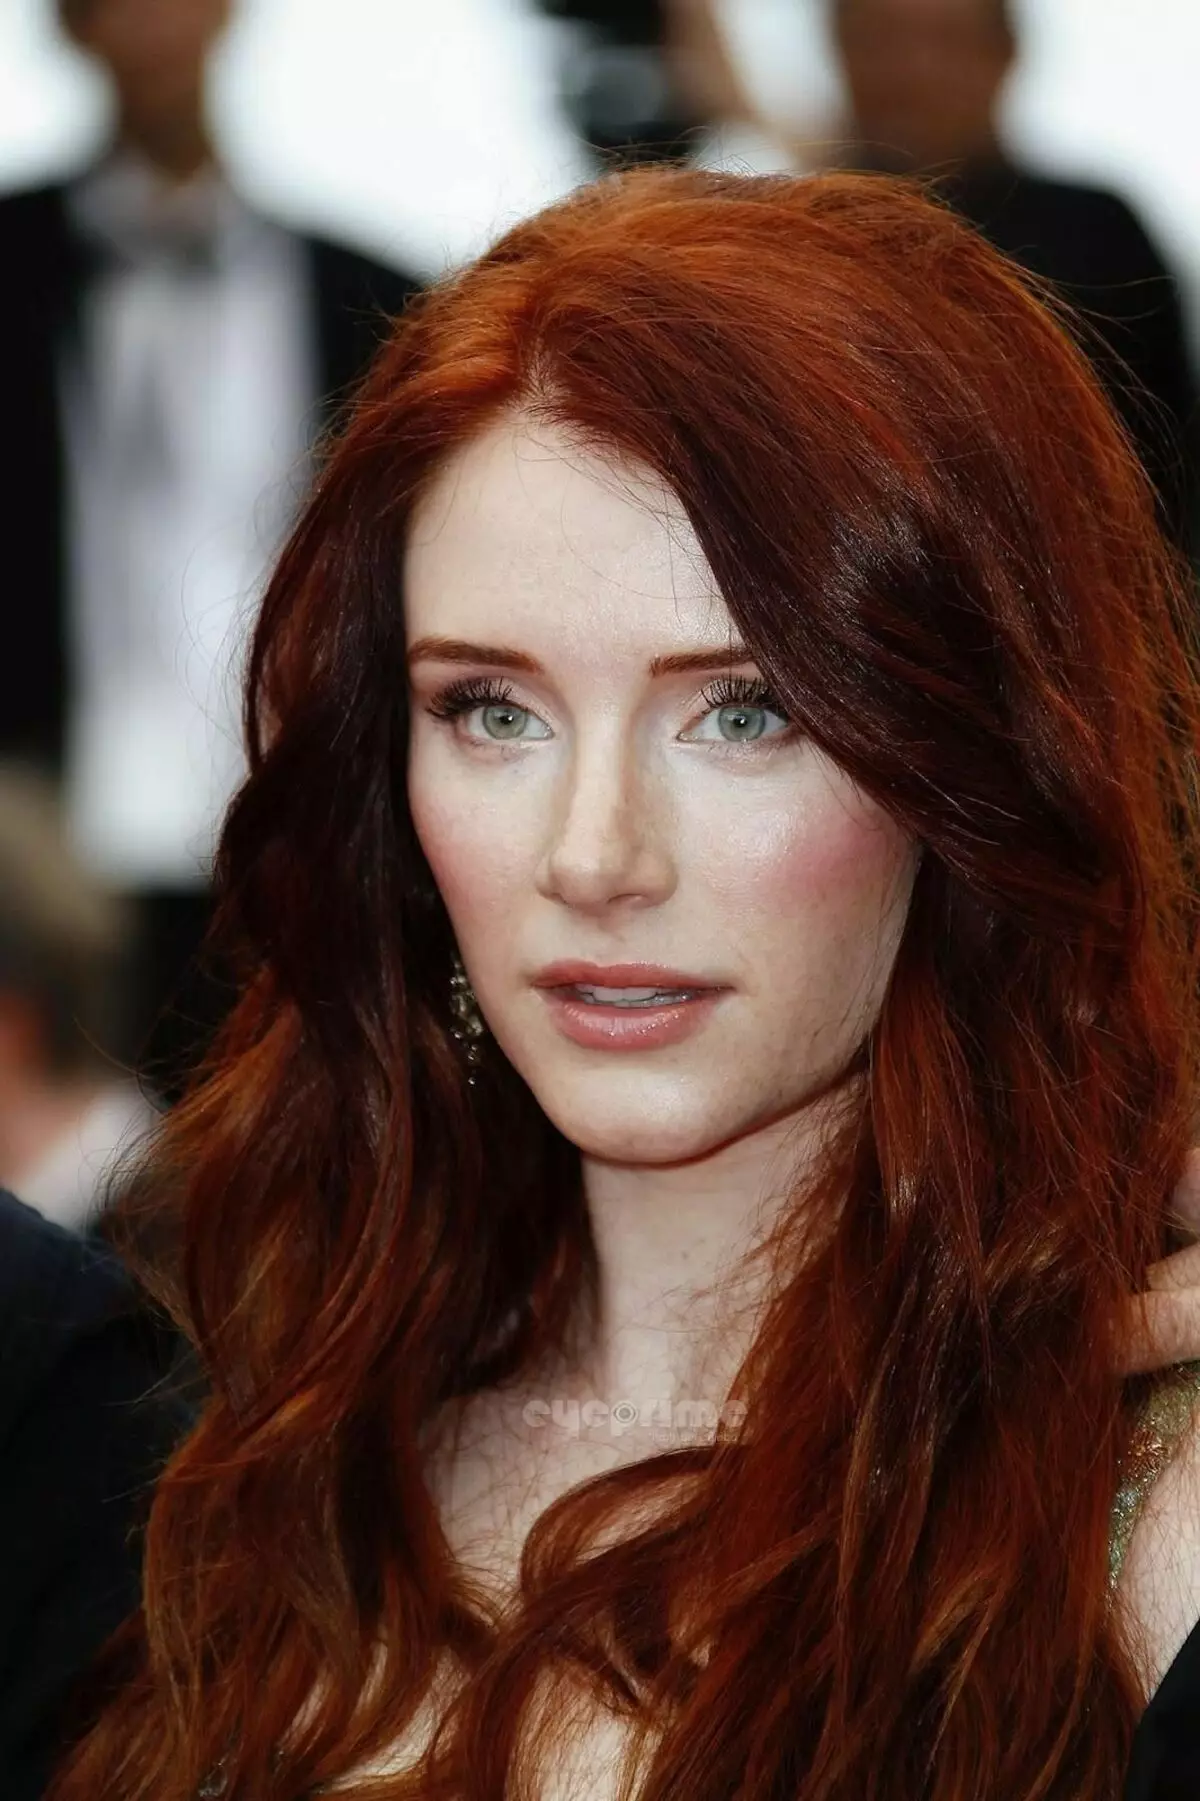 लाल केसांवरील केस (55 फोटो): बांगड्या सह तांबे-लाल रंगाच्या केसांच्या मध्यात केसांच्या मध्य लांबीचे केस, कर, पिक्सी किंवा बॉब निवडा 6006_4